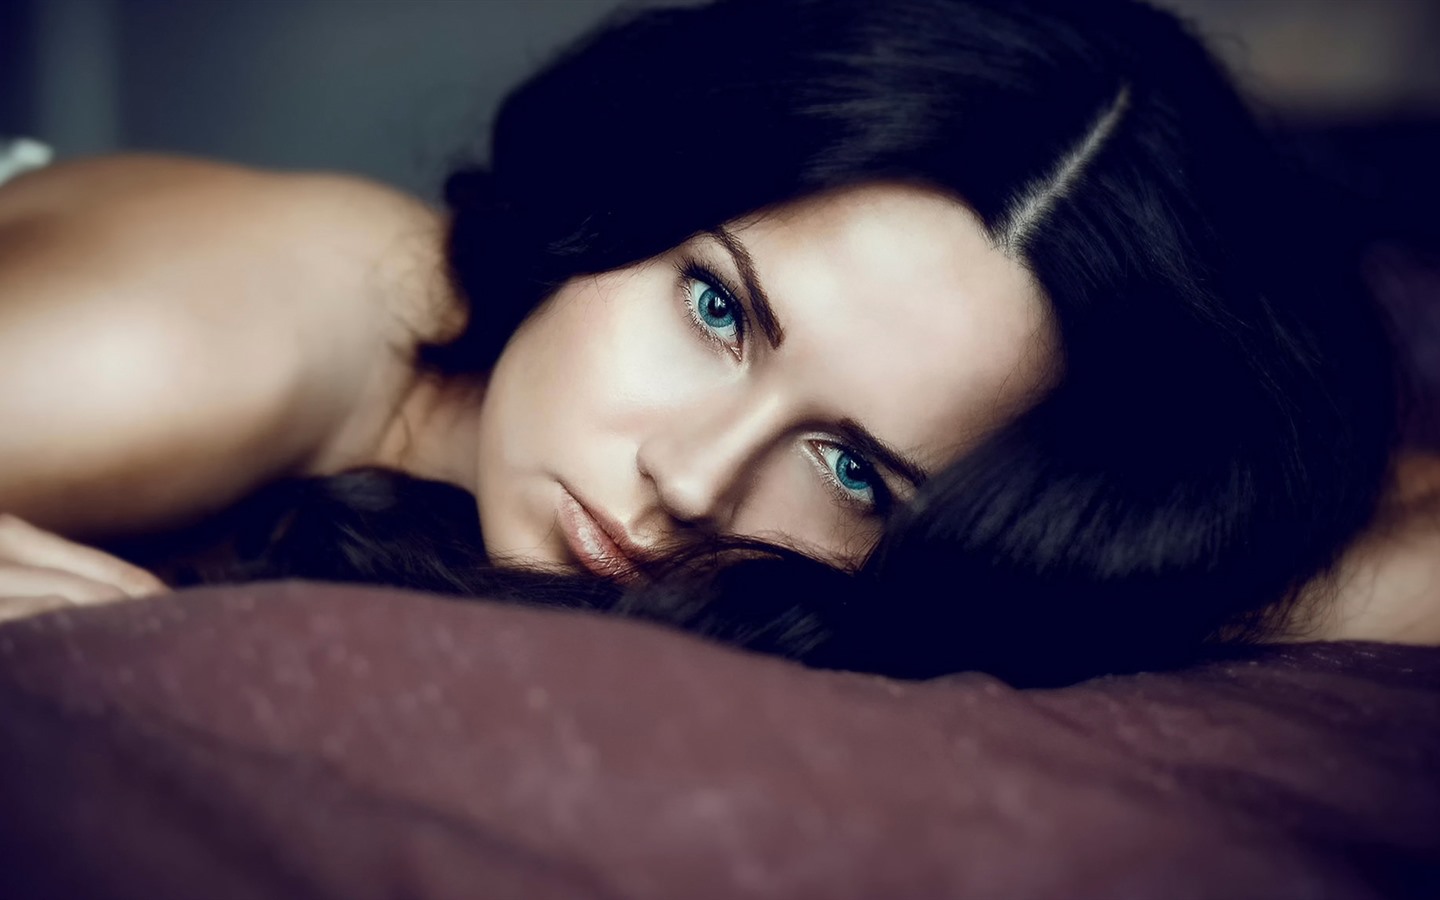  蓝色眼睛的黑色长发美女壁纸 